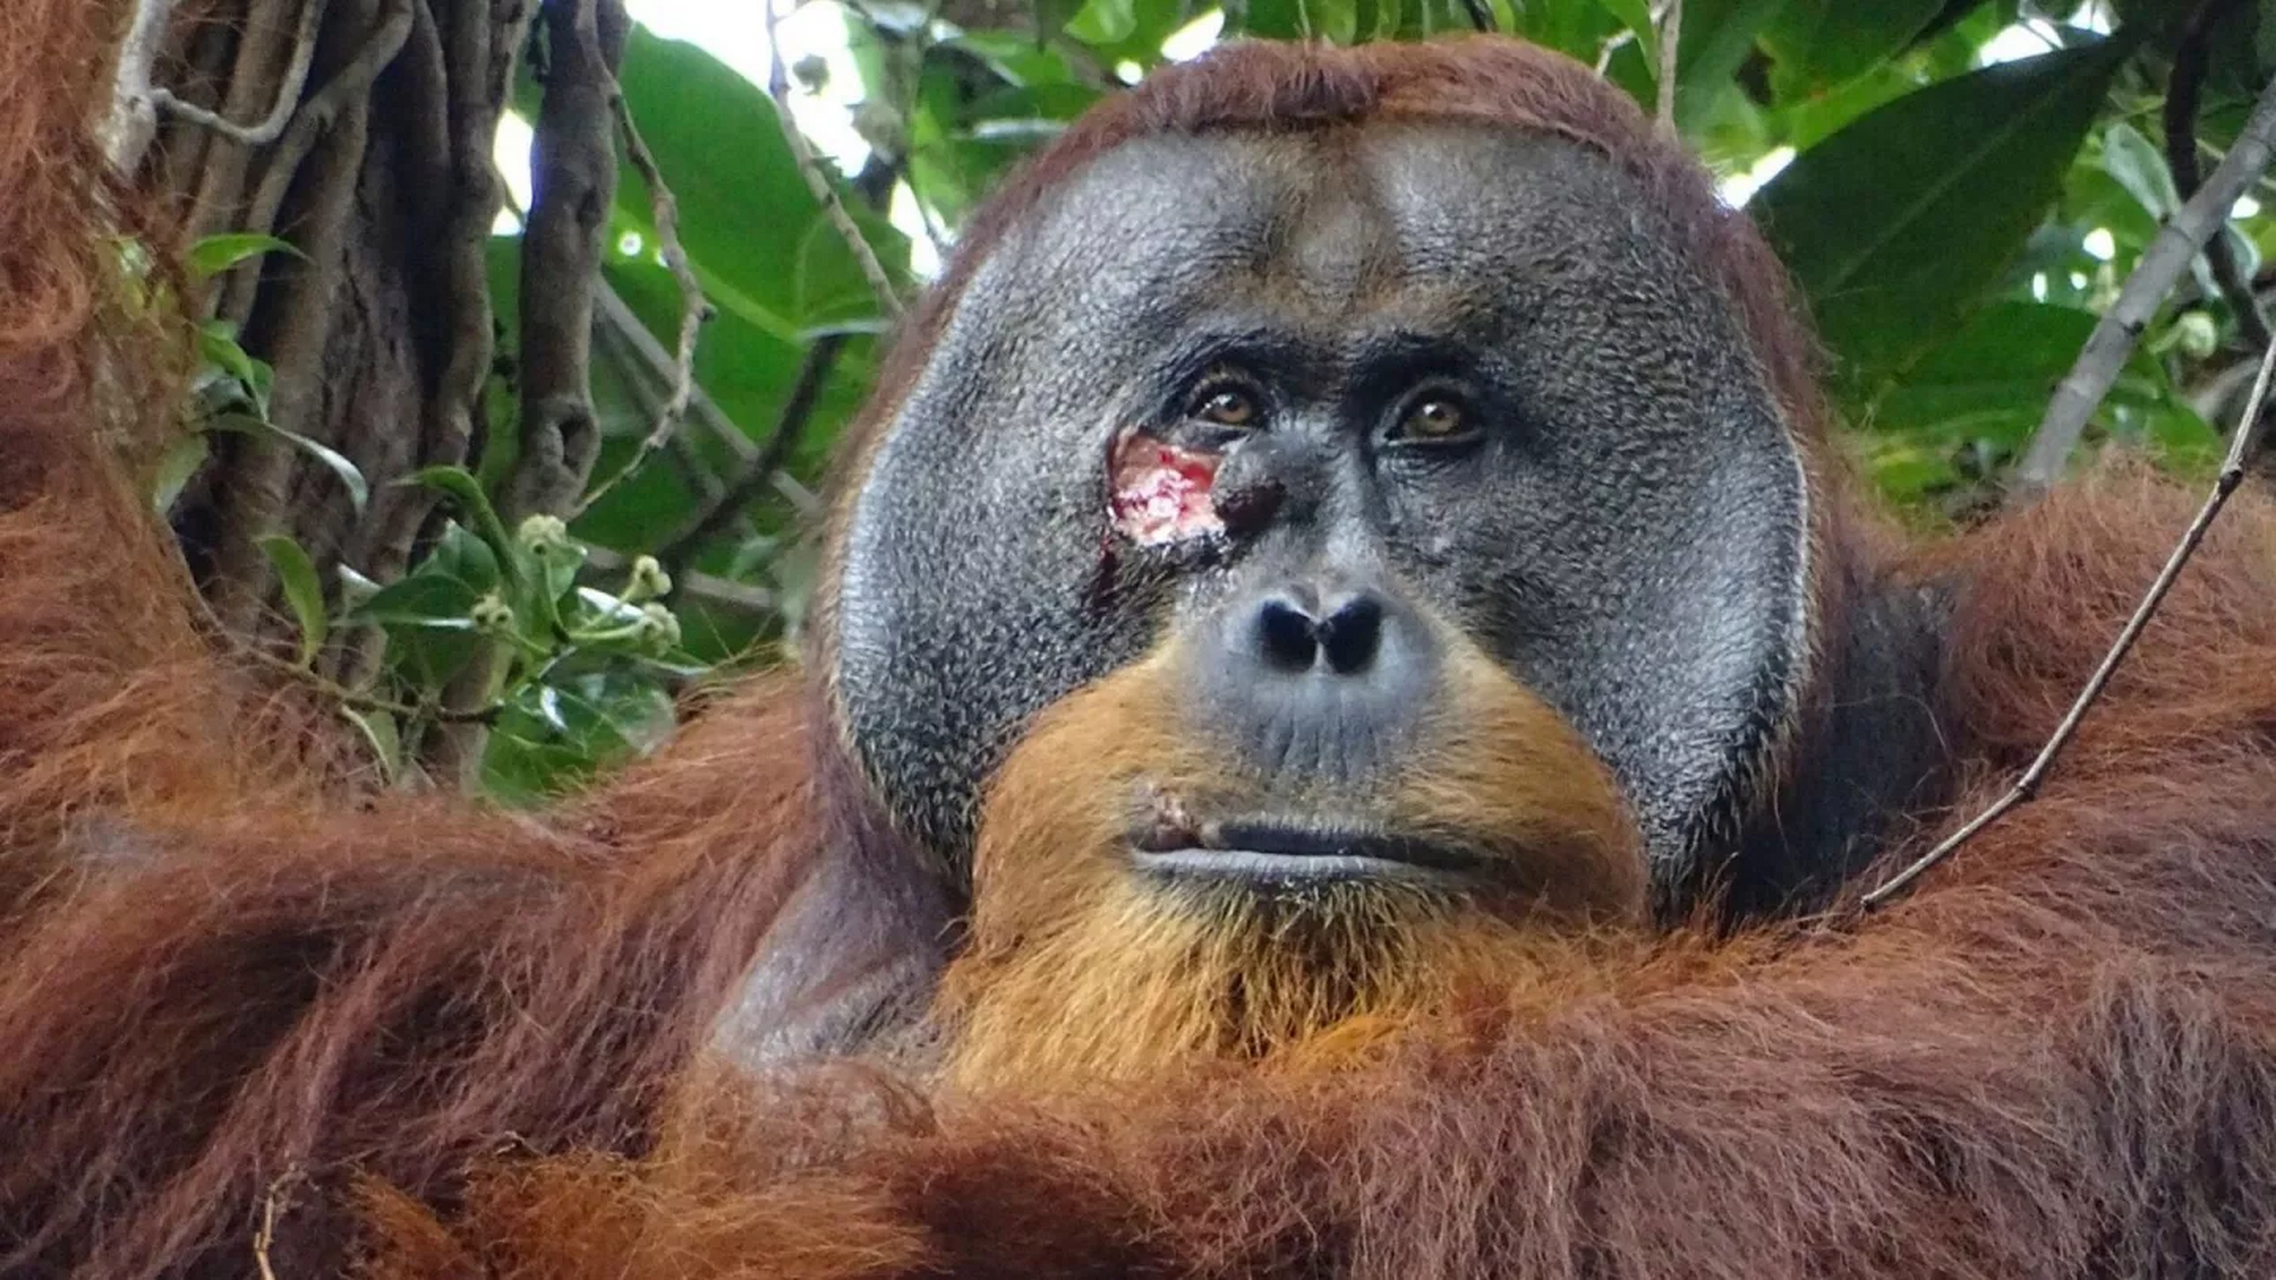 科学家发现,红毛猩猩拉库斯使用植物阿卡库宁治疗伤口,疗效显著